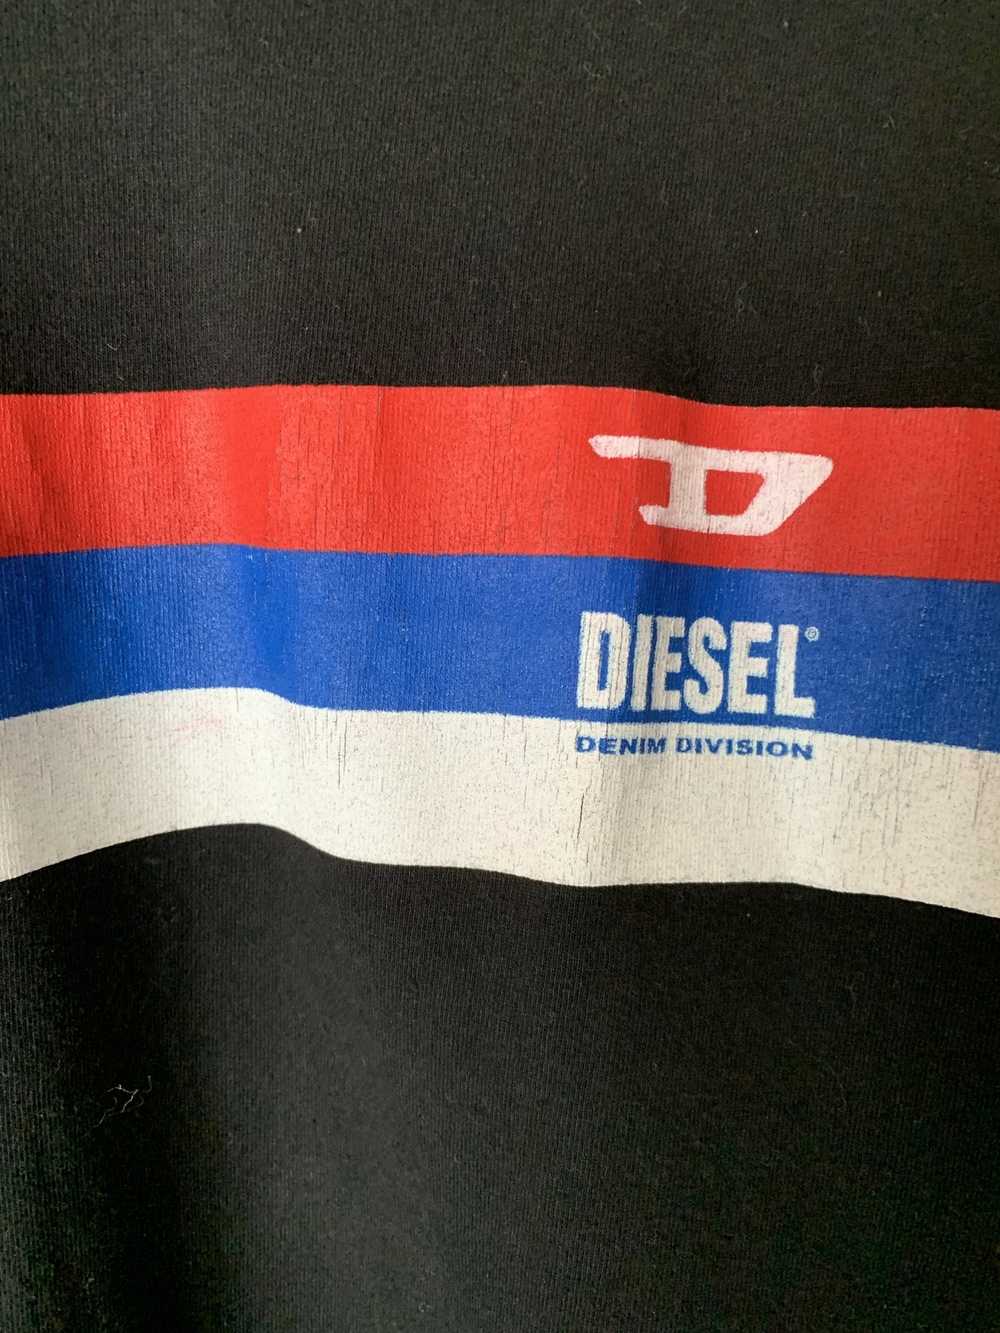 Diesel Vintage Long Sleeve - image 2